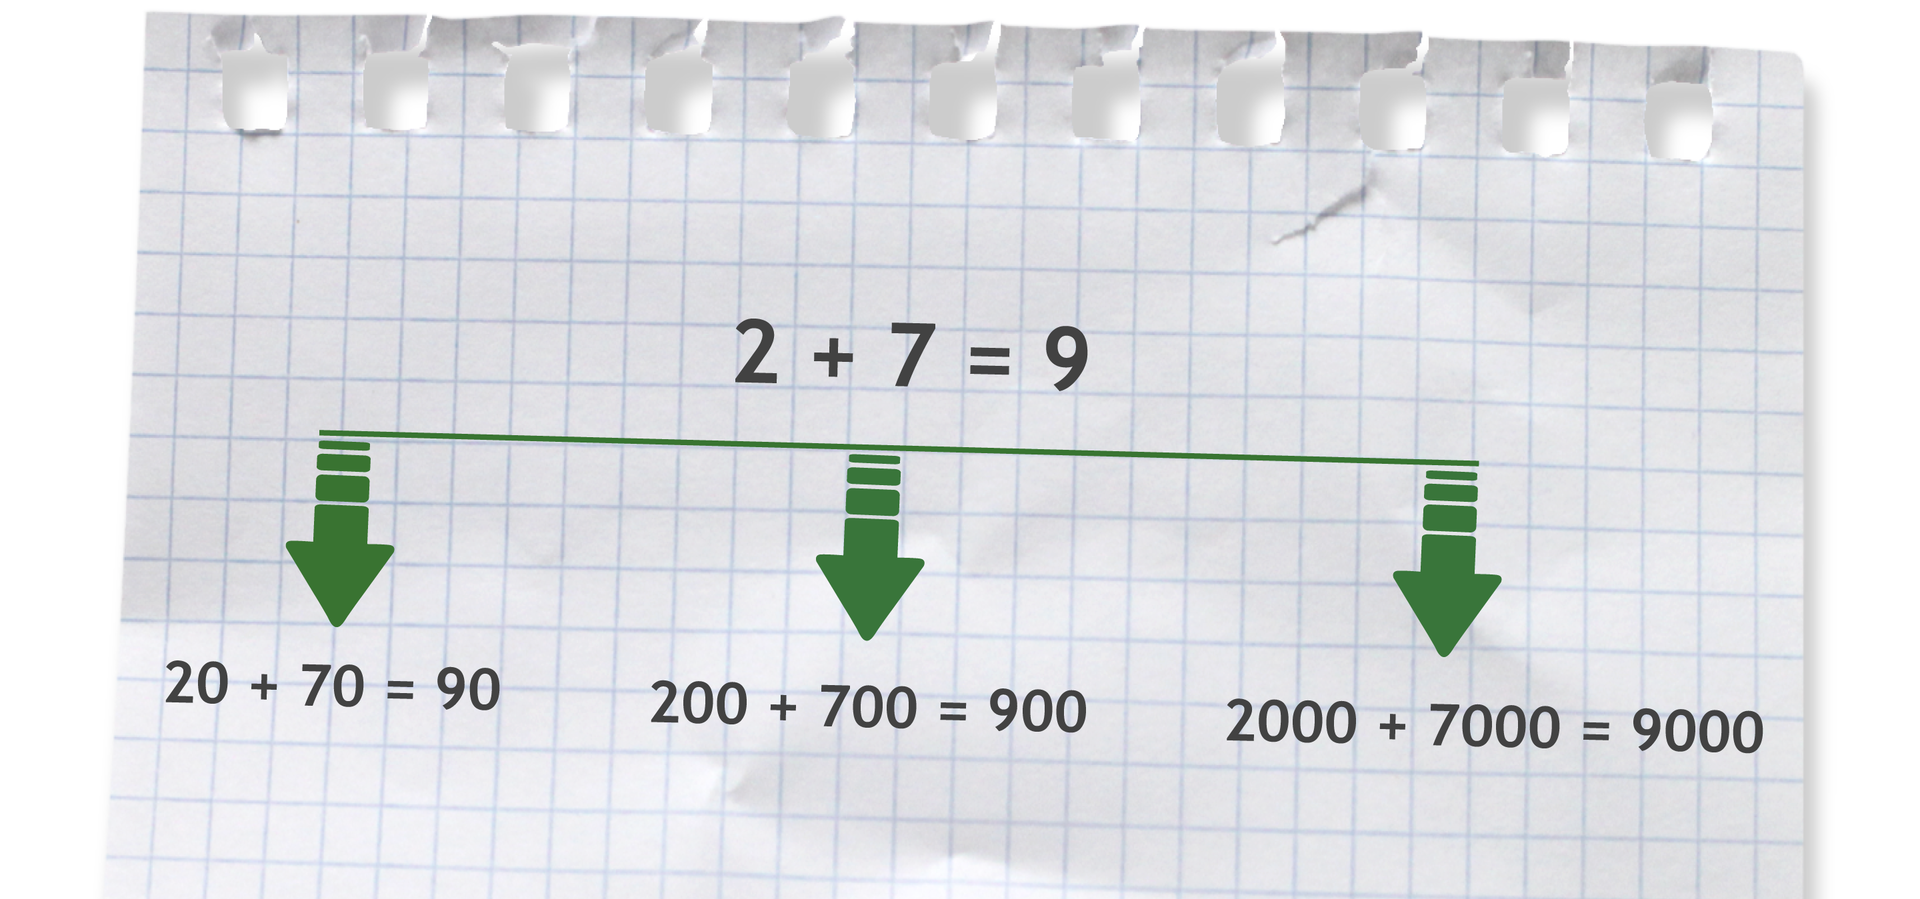 Grafika pokazująca, że na  podstawie działania 2+7=9 w łatwy sposób możemy podać wyniki innych działań, na przykład: 20+70=90, 200+700=900 lub 2000+7000=dziewięć tysięcy.